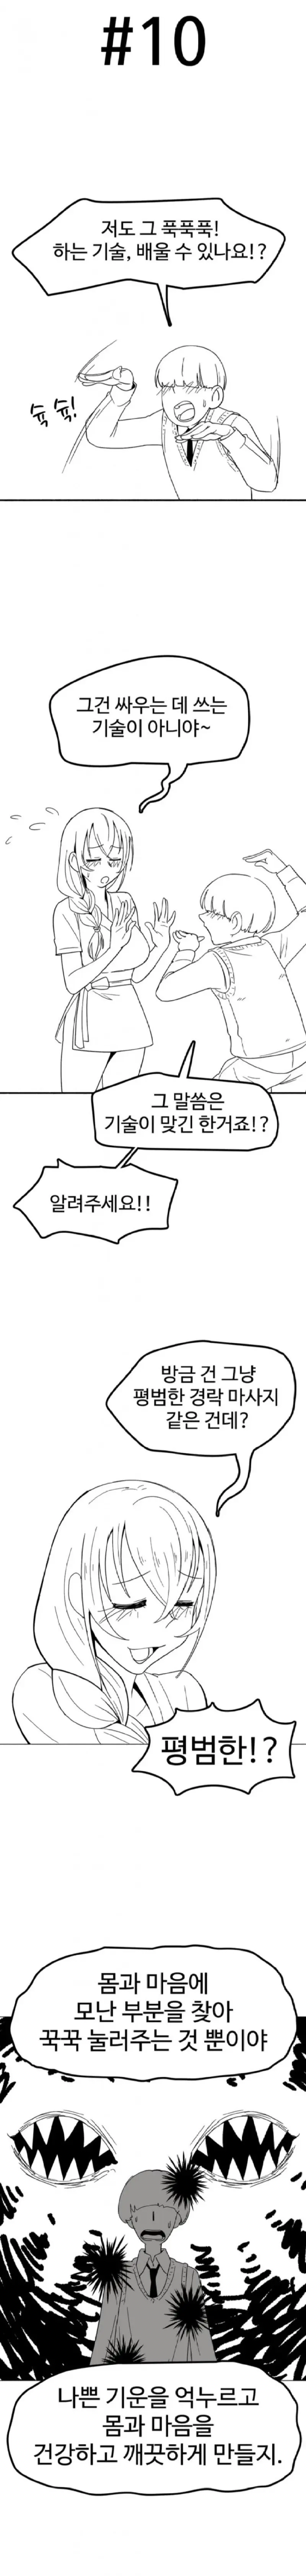 스압) [싱글벙글] 꼬추 주세요.manhwa | mbong.kr 엠봉